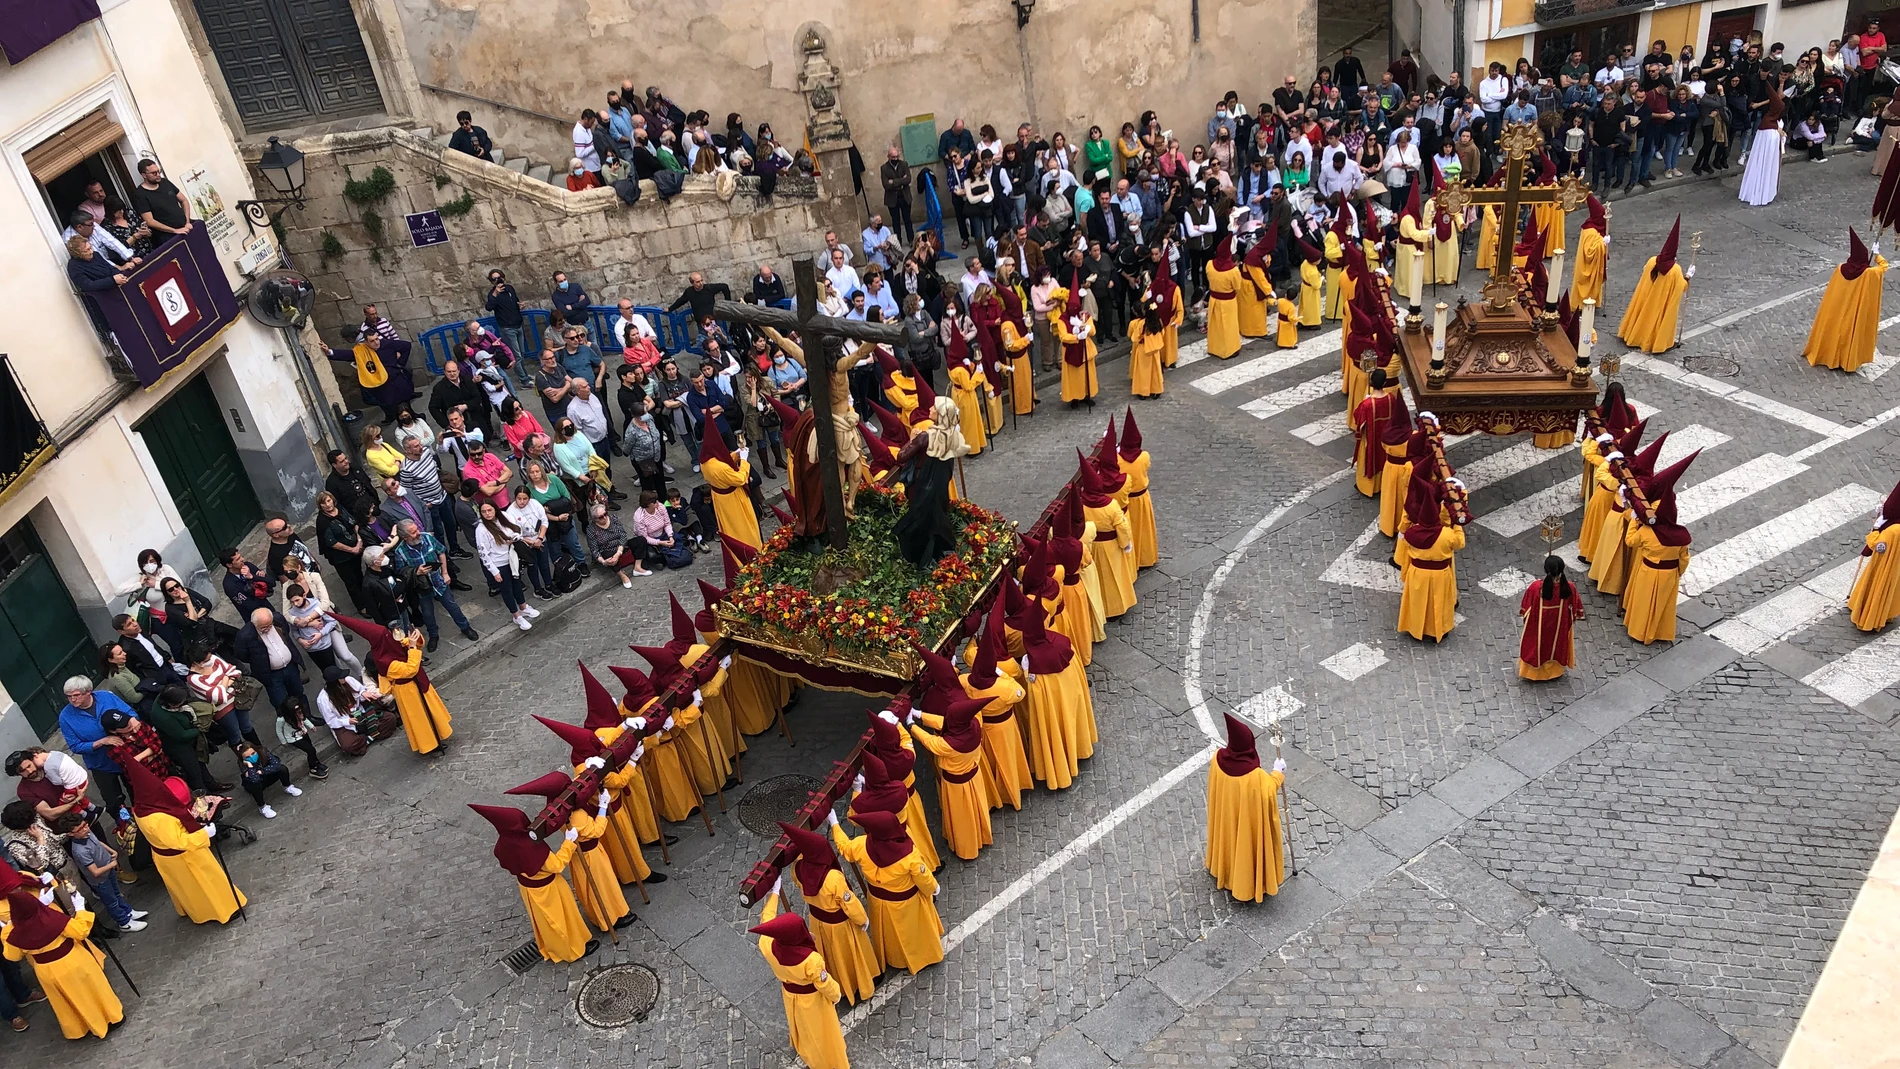 Absurdo lecho dignidad Esta Semana Santa apuntaros a Cuenca, cuando la ciudad se convierte en  templos sin paredes